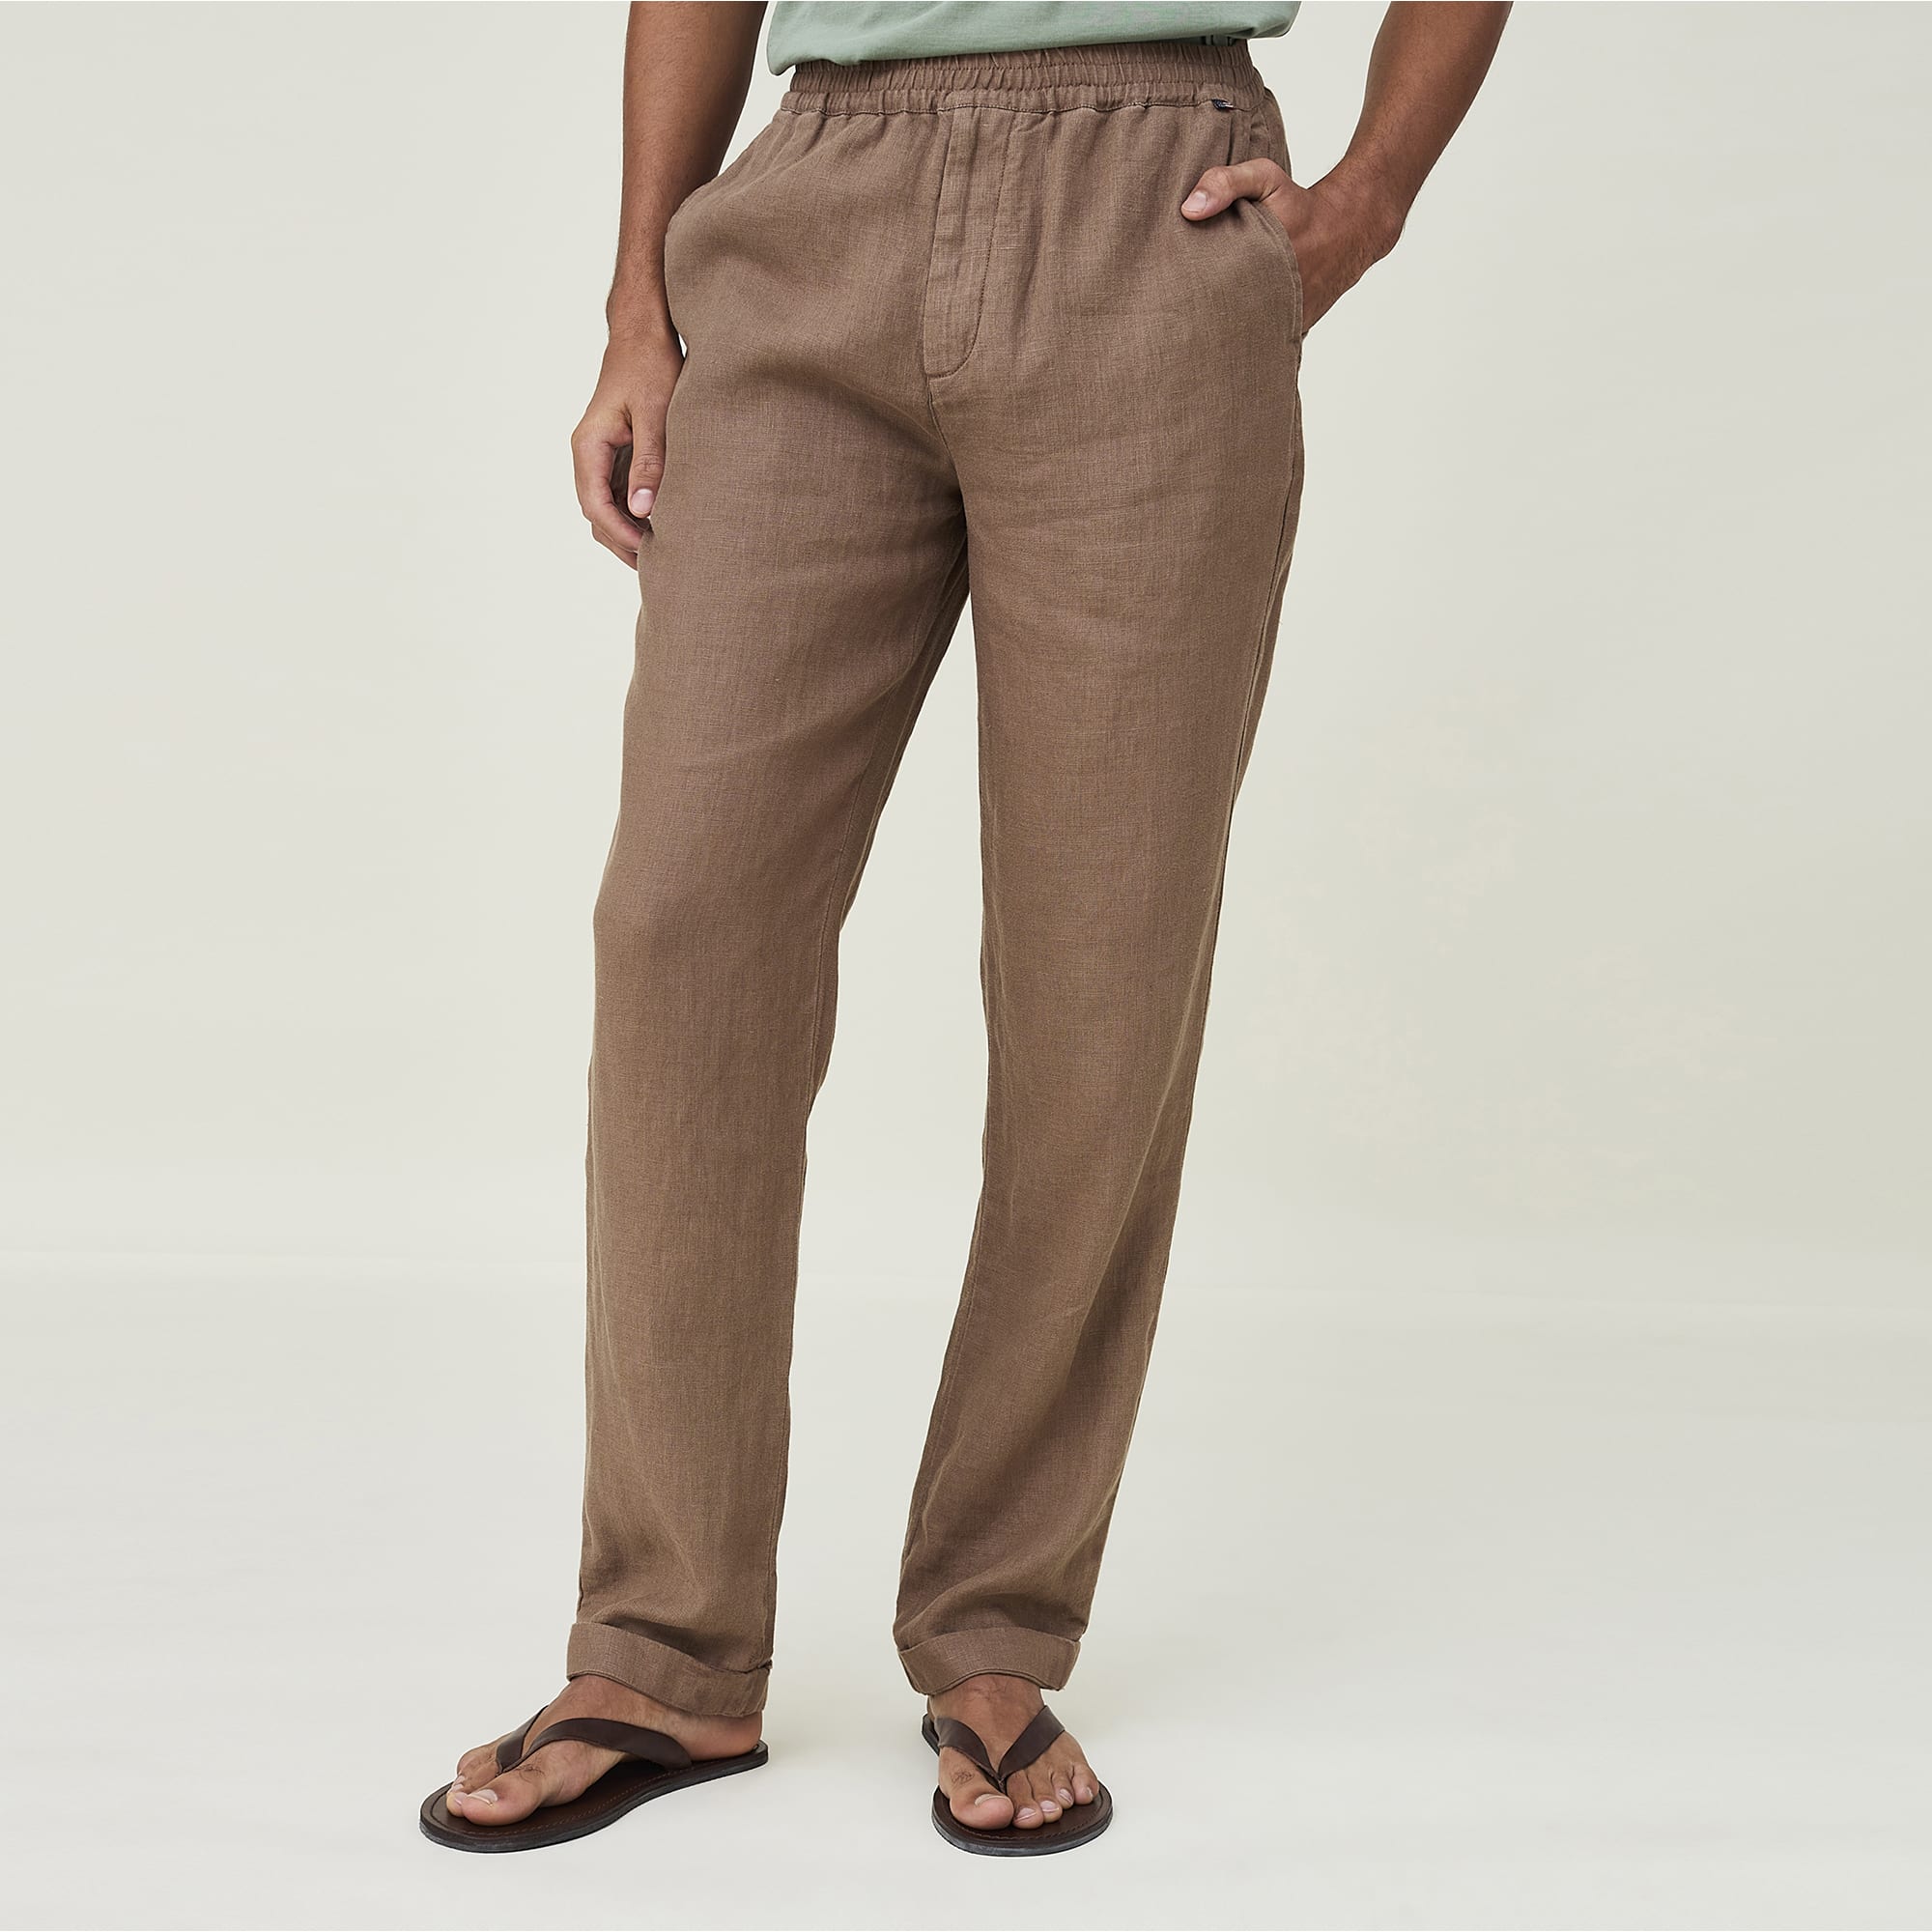 Hugh Linen Pants, light brown